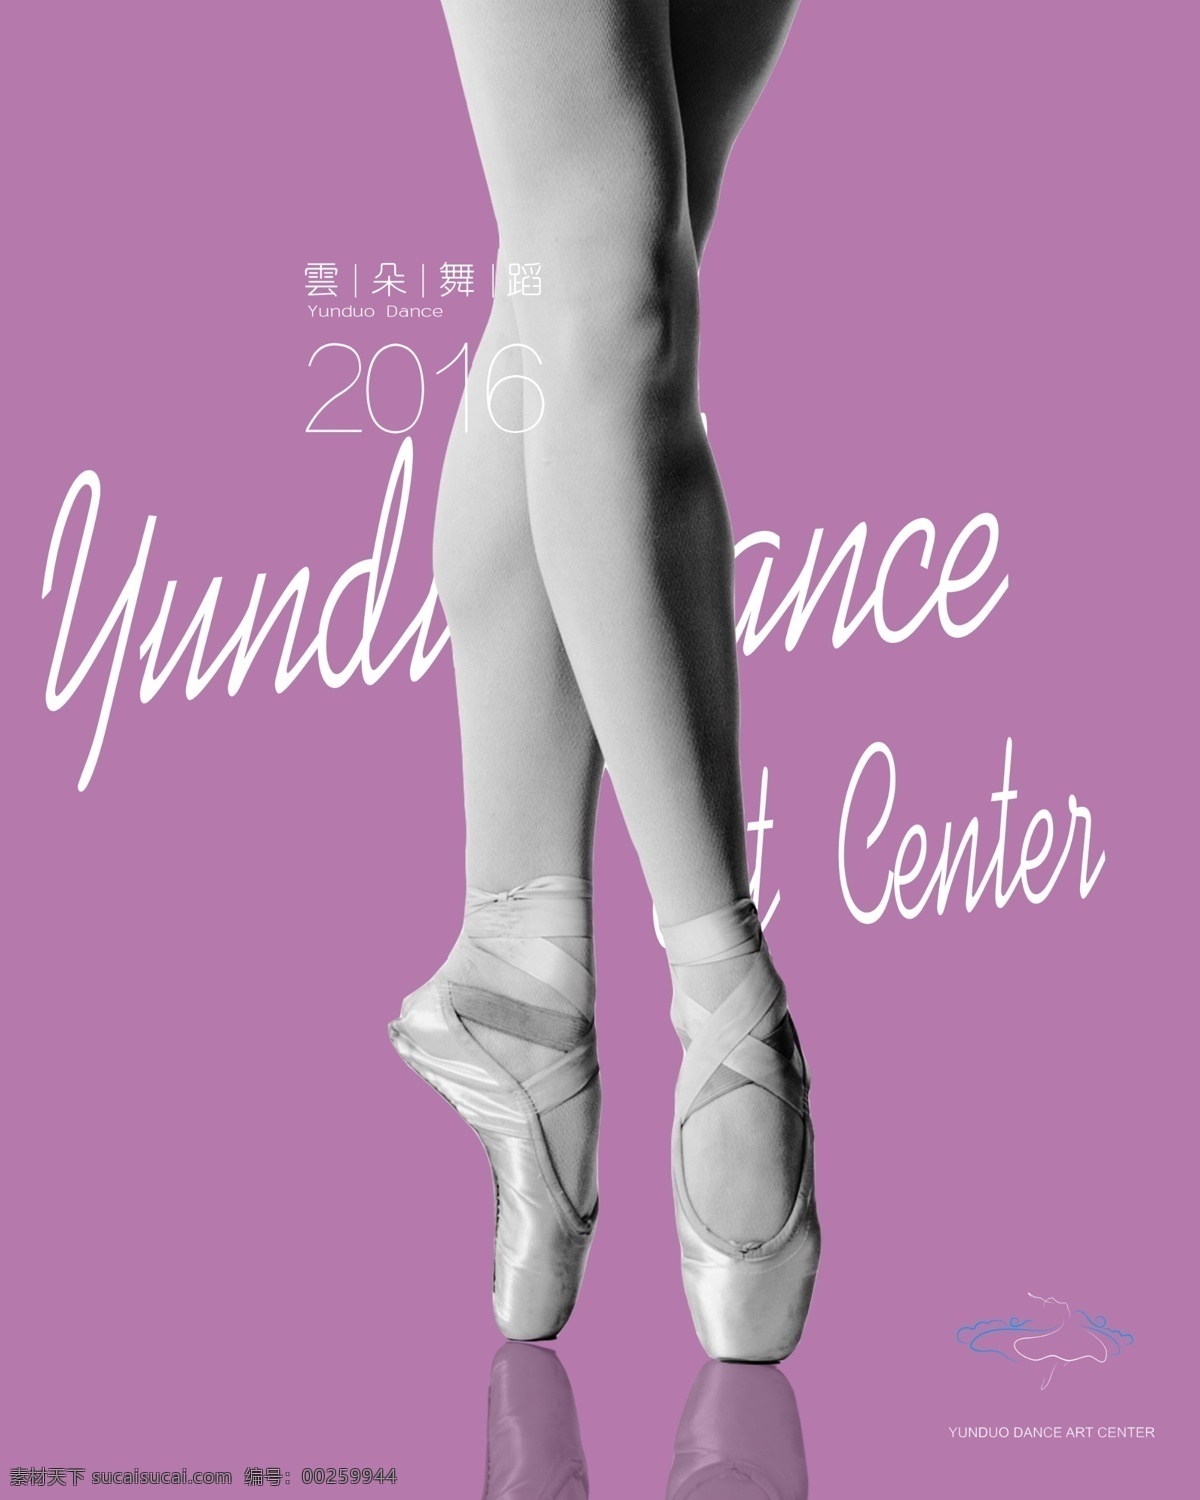 舞蹈 学校 宣传海报 芭蕾舞 舞蹈班 芭蕾海报 舞蹈学校 芭蕾剪影 芭蕾脚尖 紫色